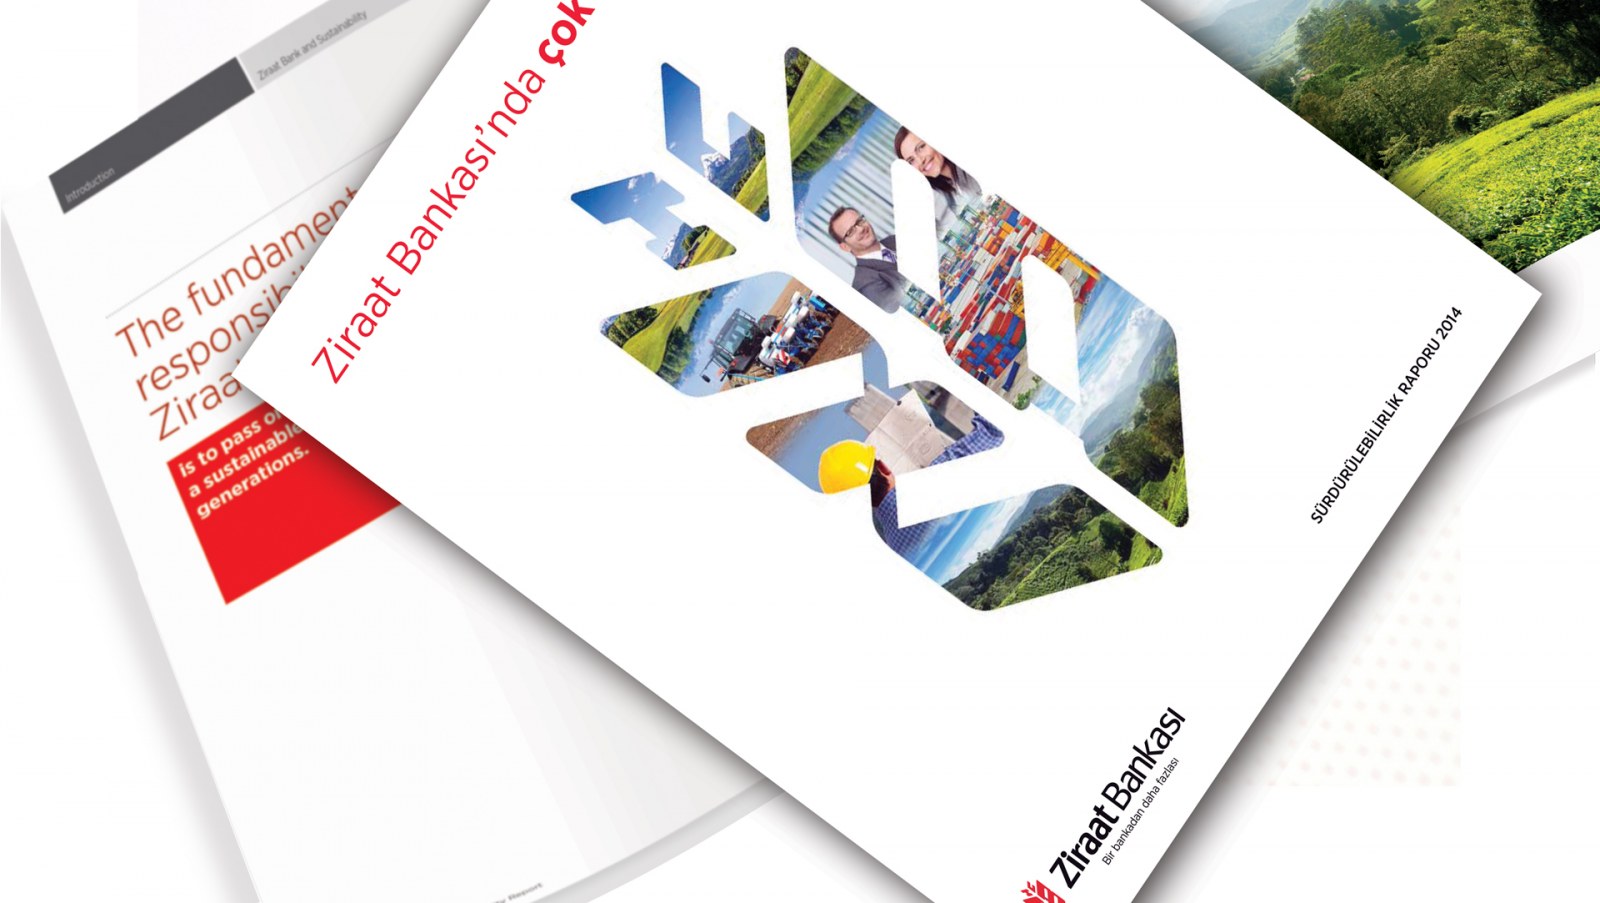 ZİRAAT BANKASI / 2014 Sürdürülebilirlik Raporu / 2014 Sustainability Report